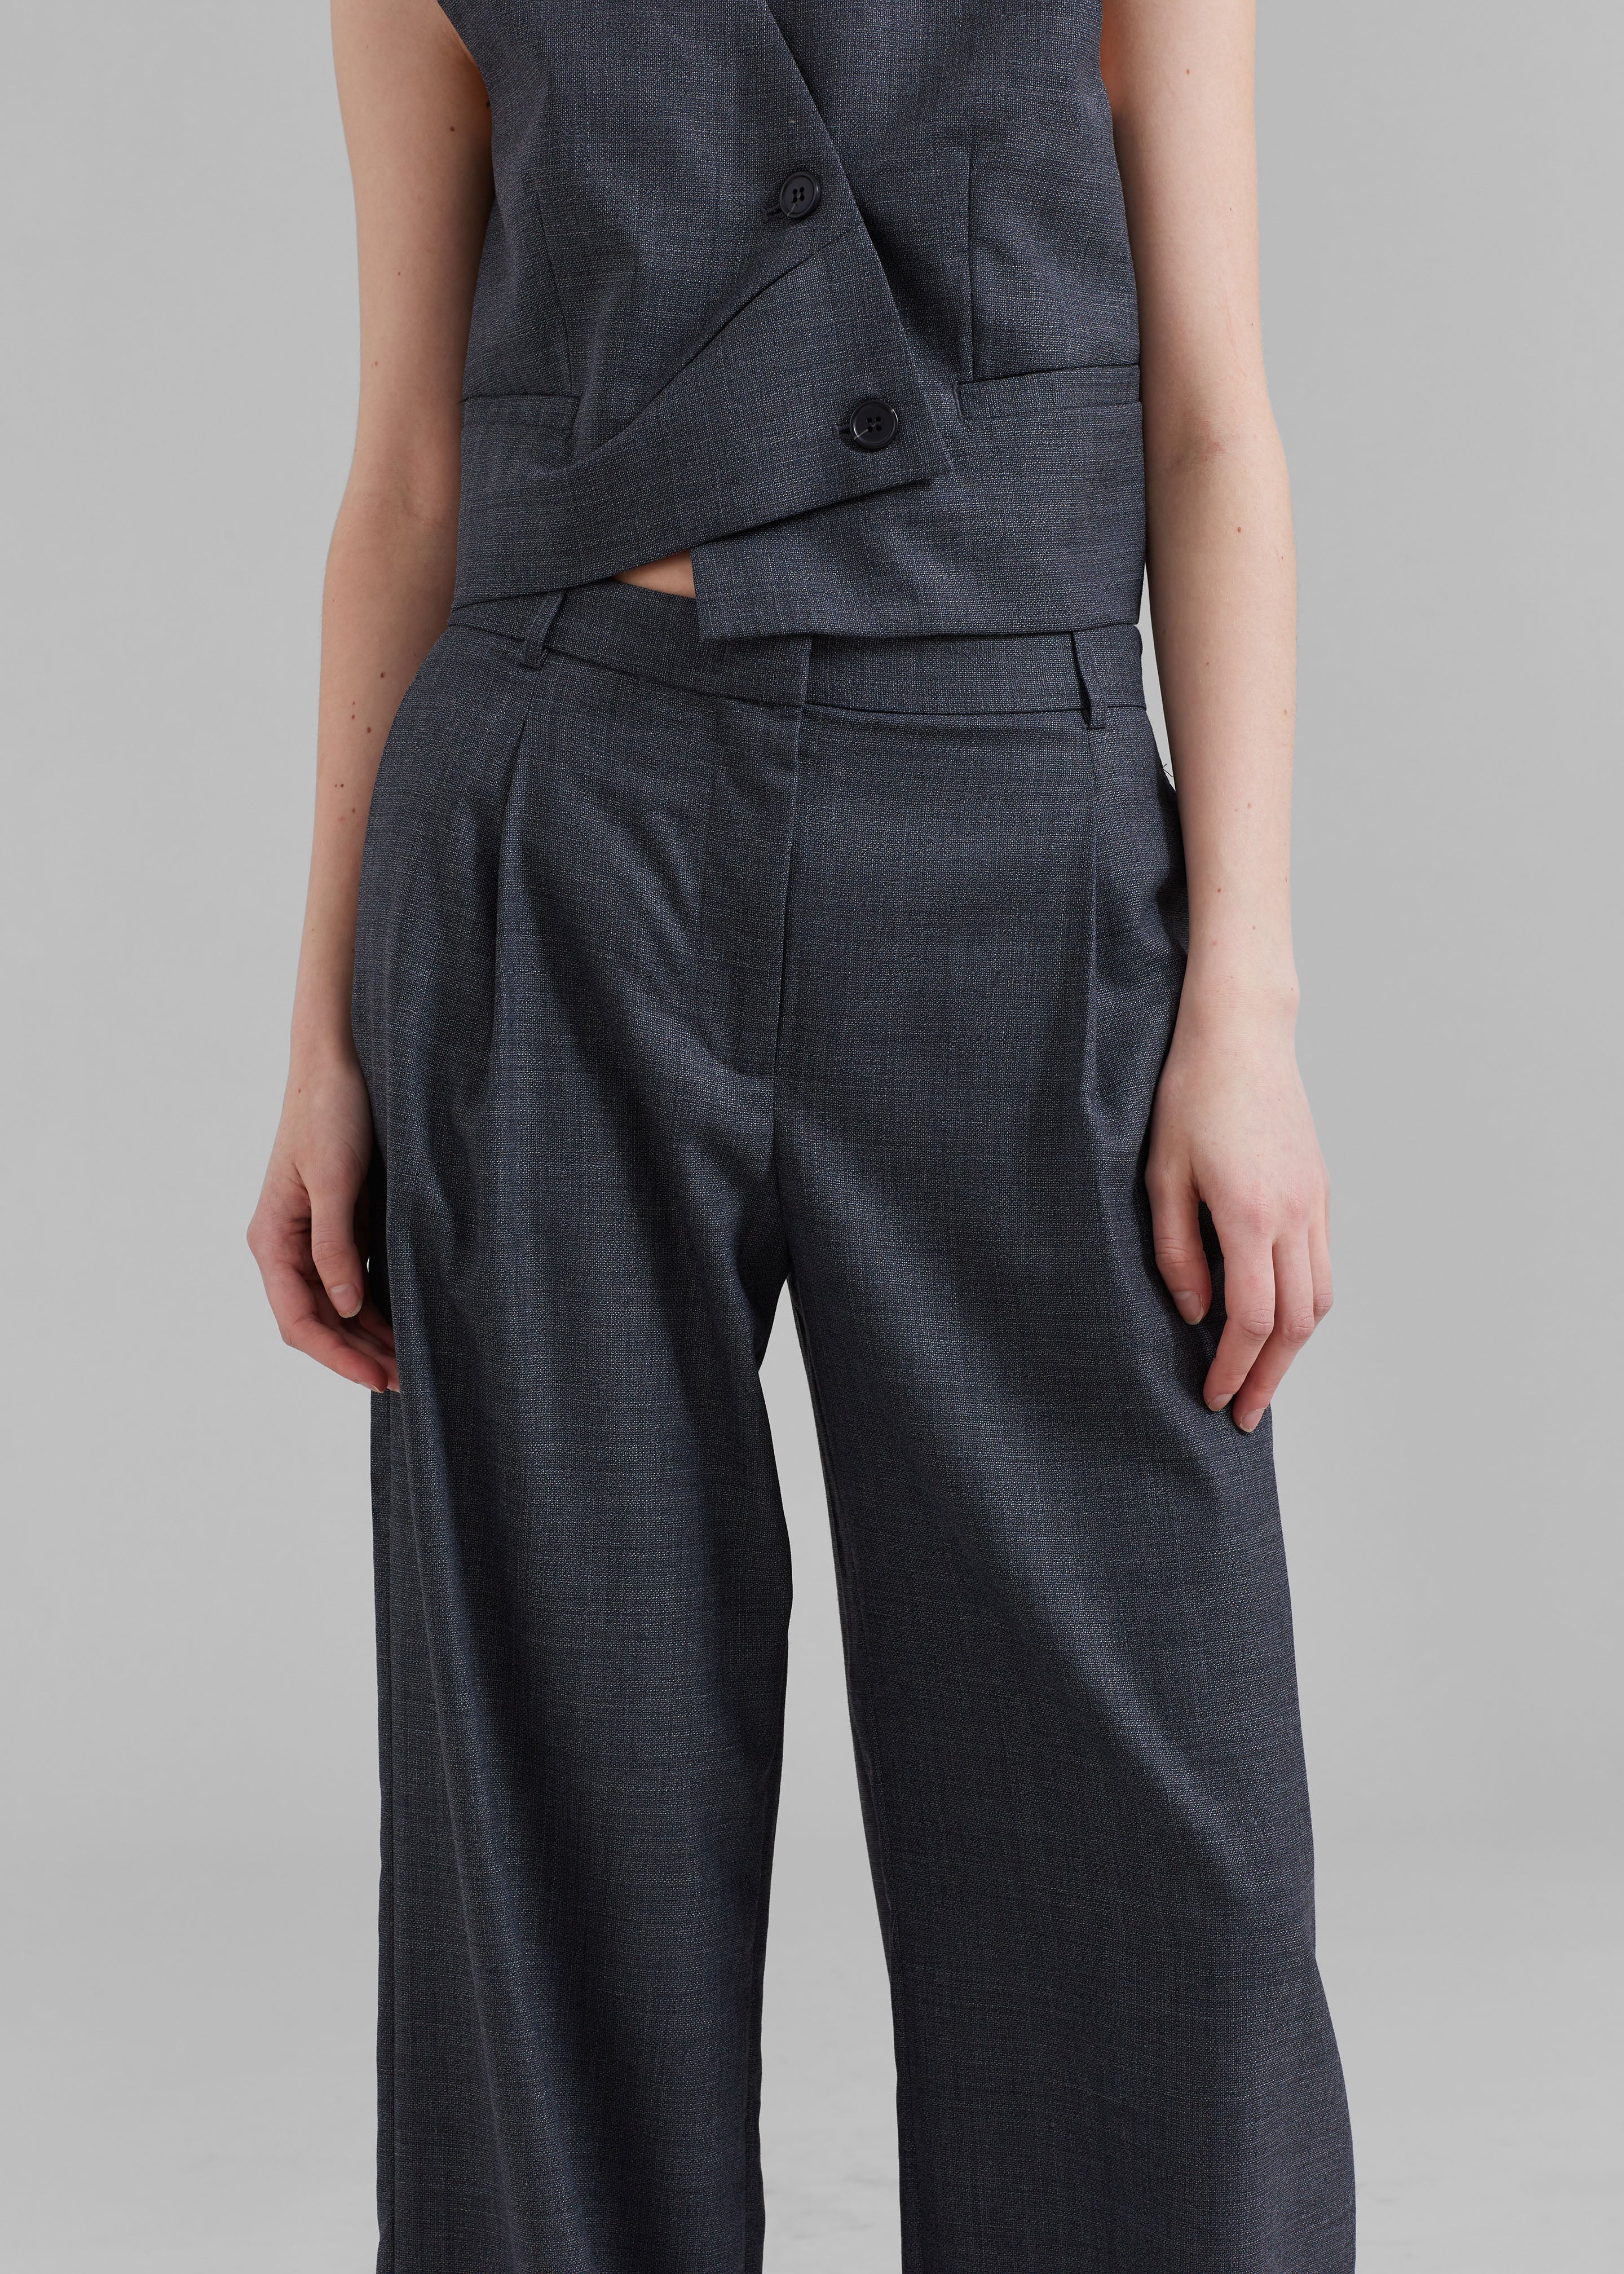 The Garment Windsor Pants - Grey Melange - 3